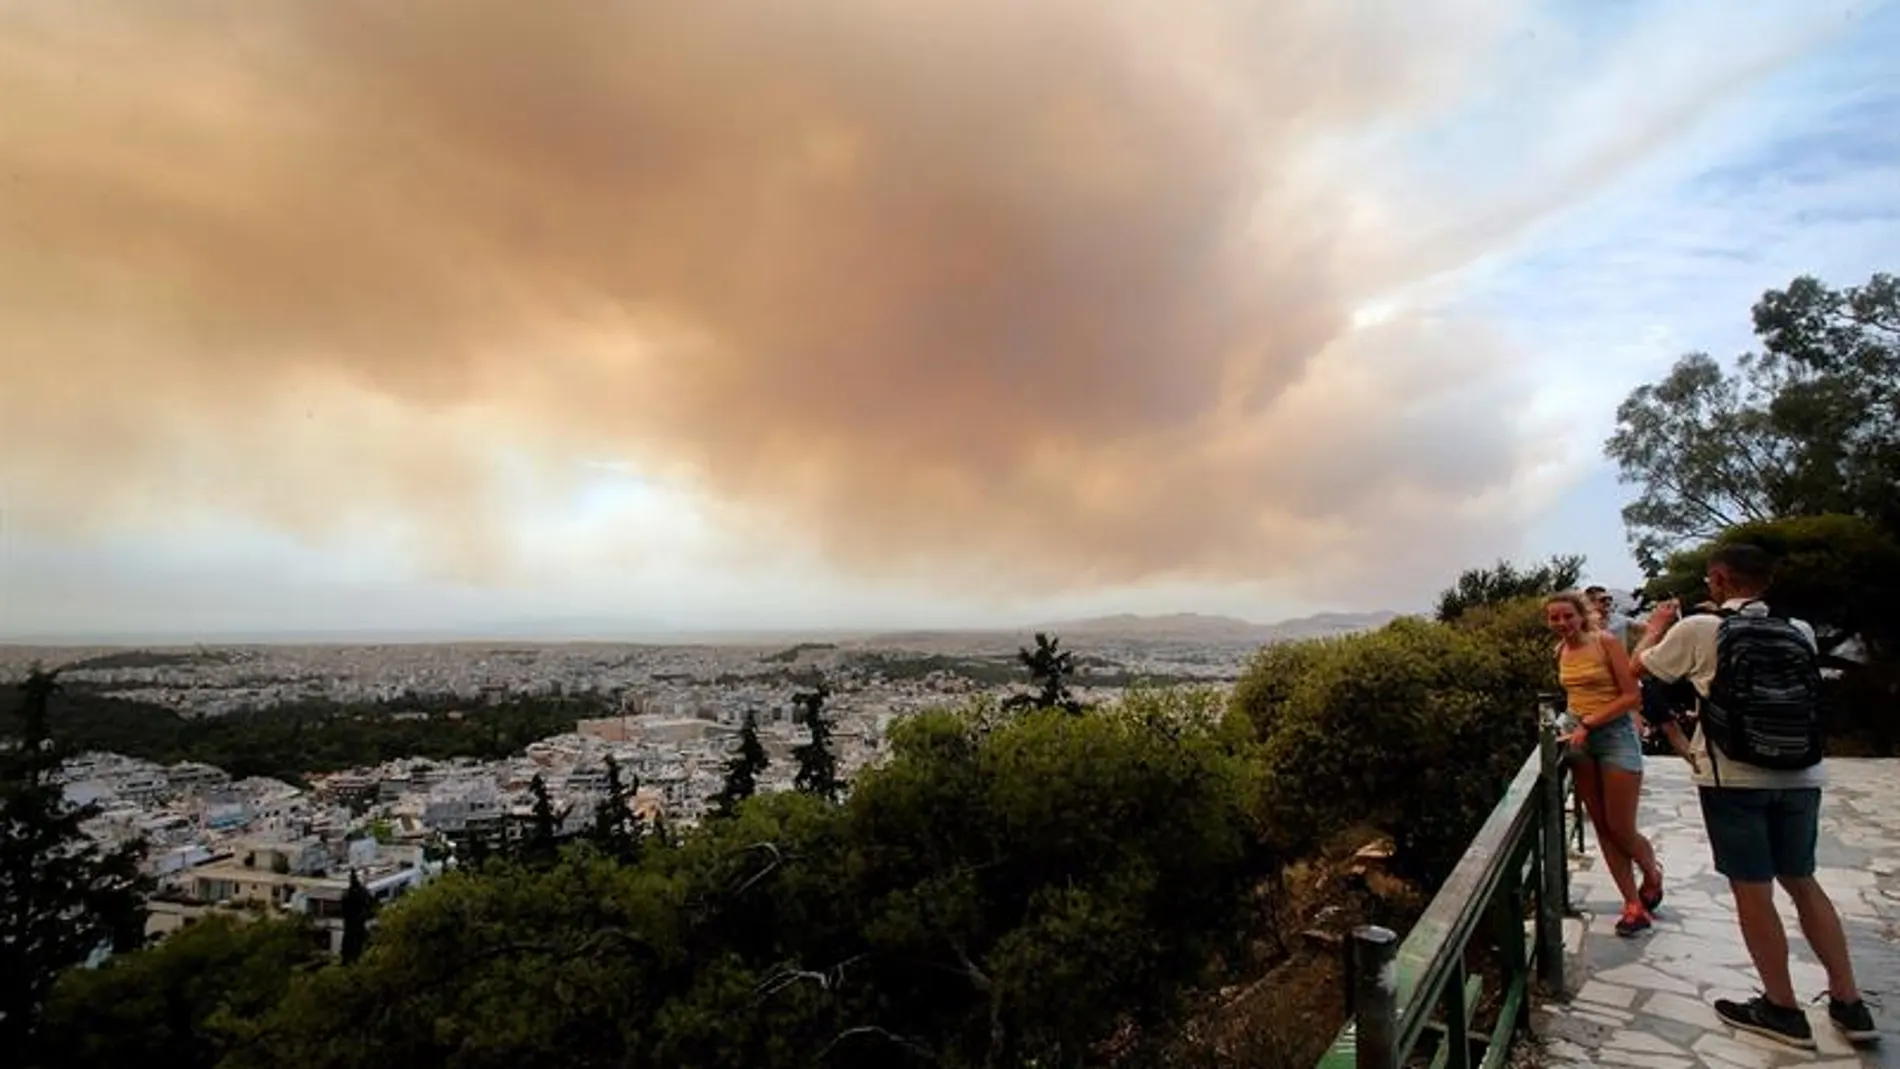 Unos turistas fotografían las nubes densas de humo que se expanden en el cielo debido un incendio en las montañas de Gerania, a 54 km de Atenas